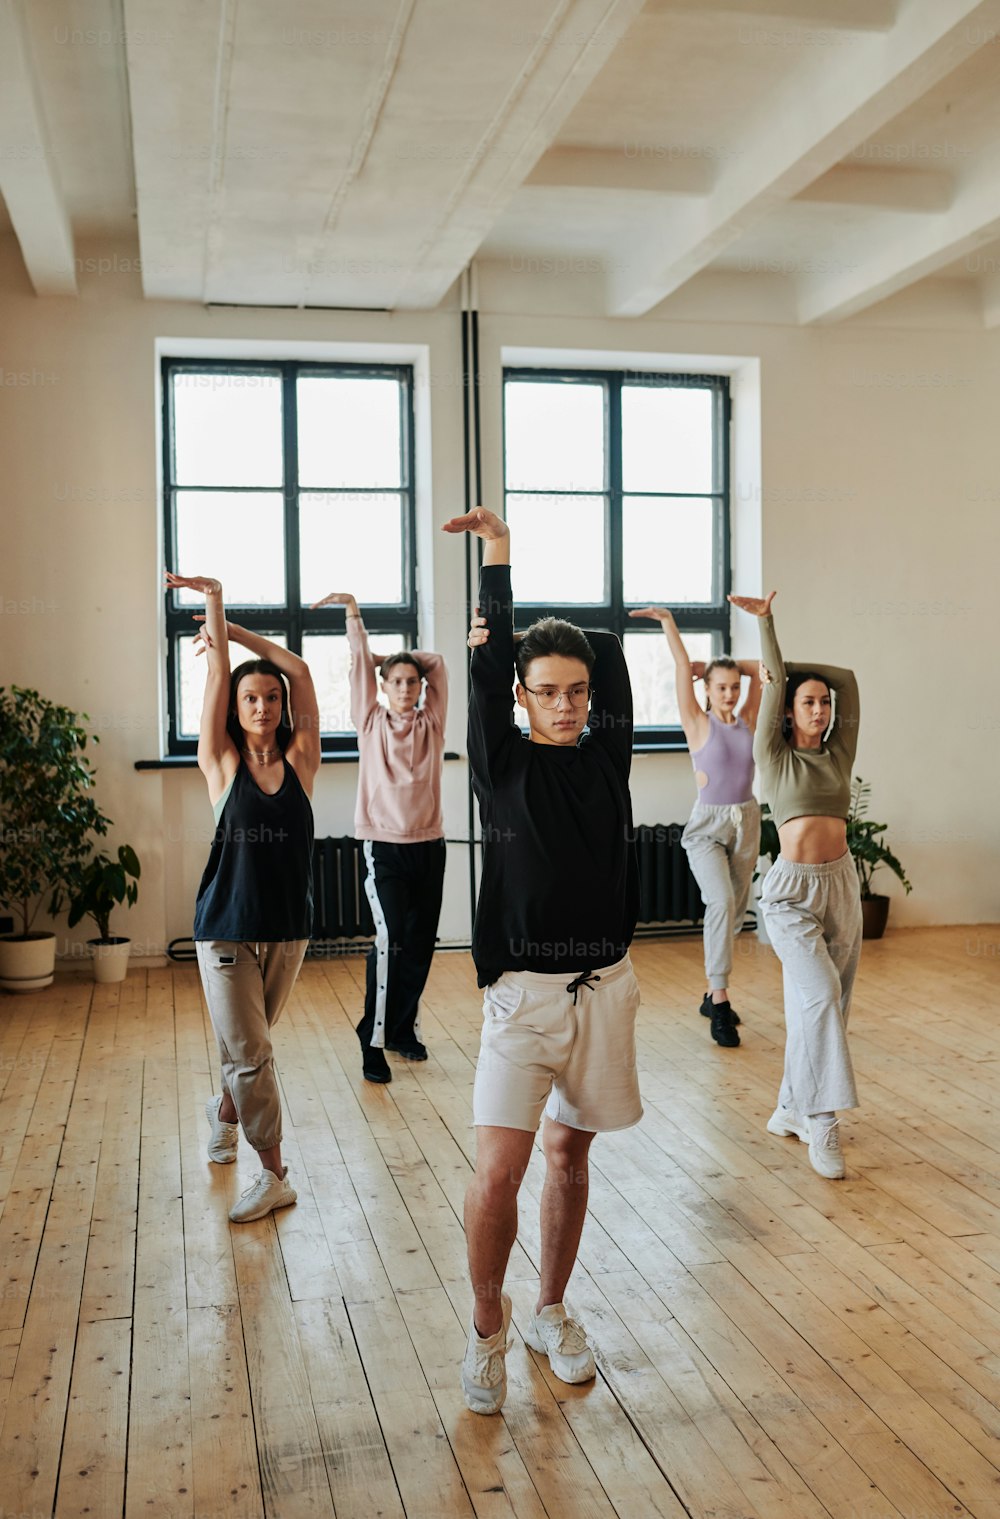 スタジオでのトレーニング中に女の子と男のグループに流行のダンスエクササイズを示すパフォーマンスグループの若い10代の男性リーダー